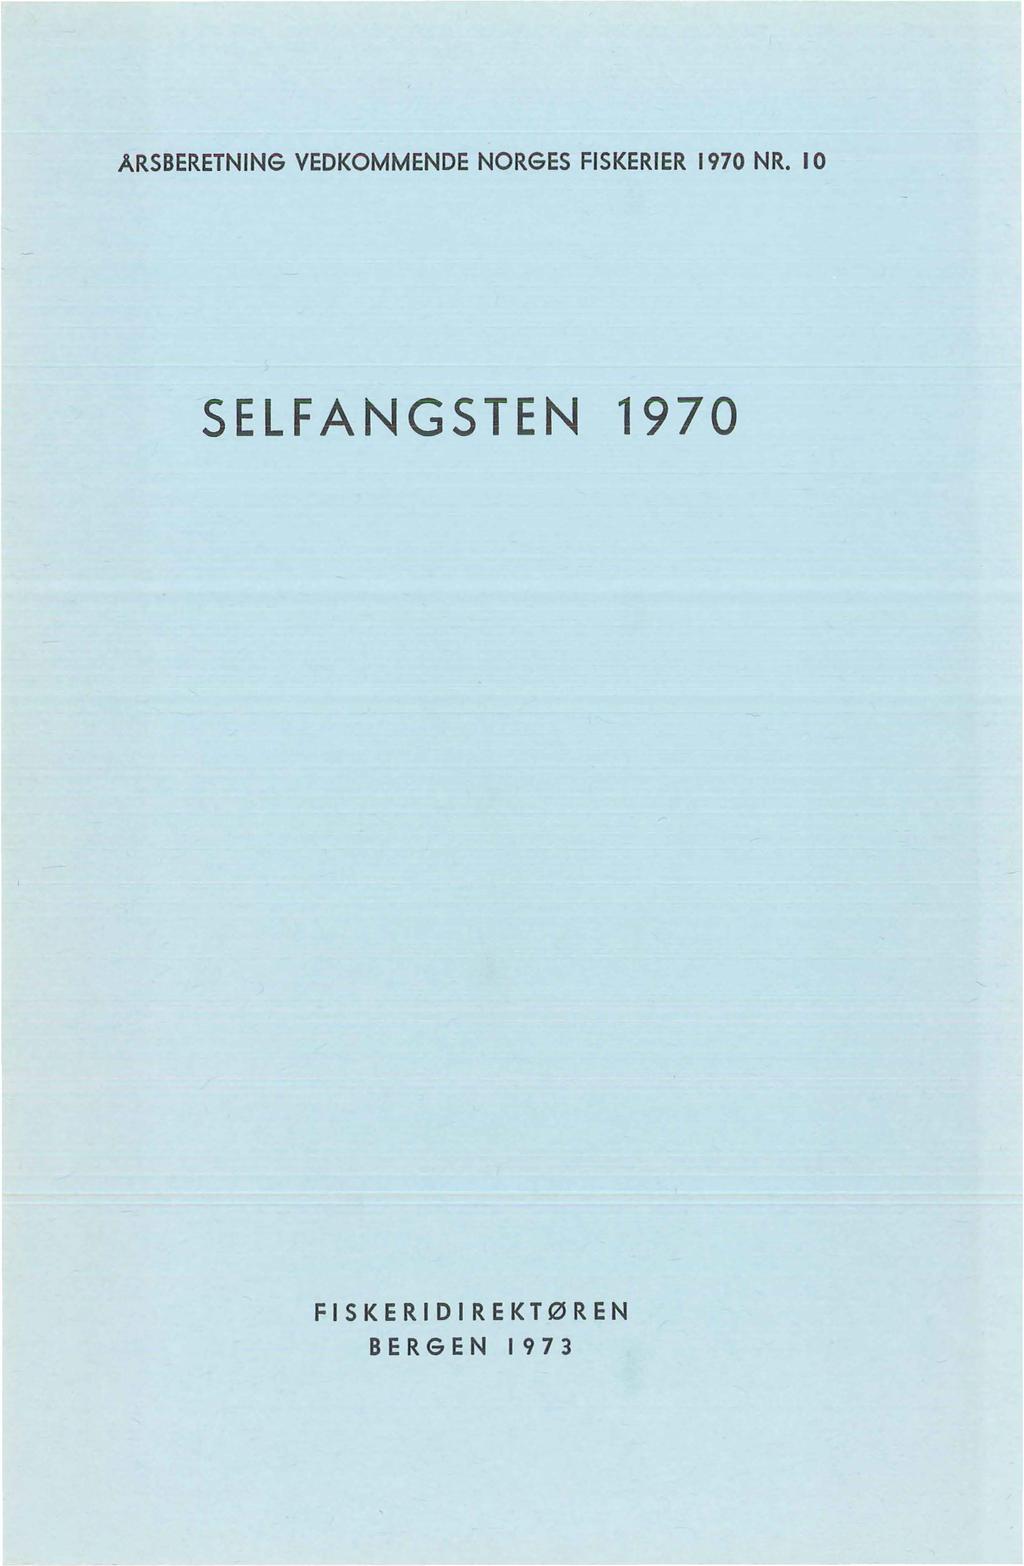 ARSBERETNING VEDKOMMENDE NORGES FISKERIER 1970 NR.